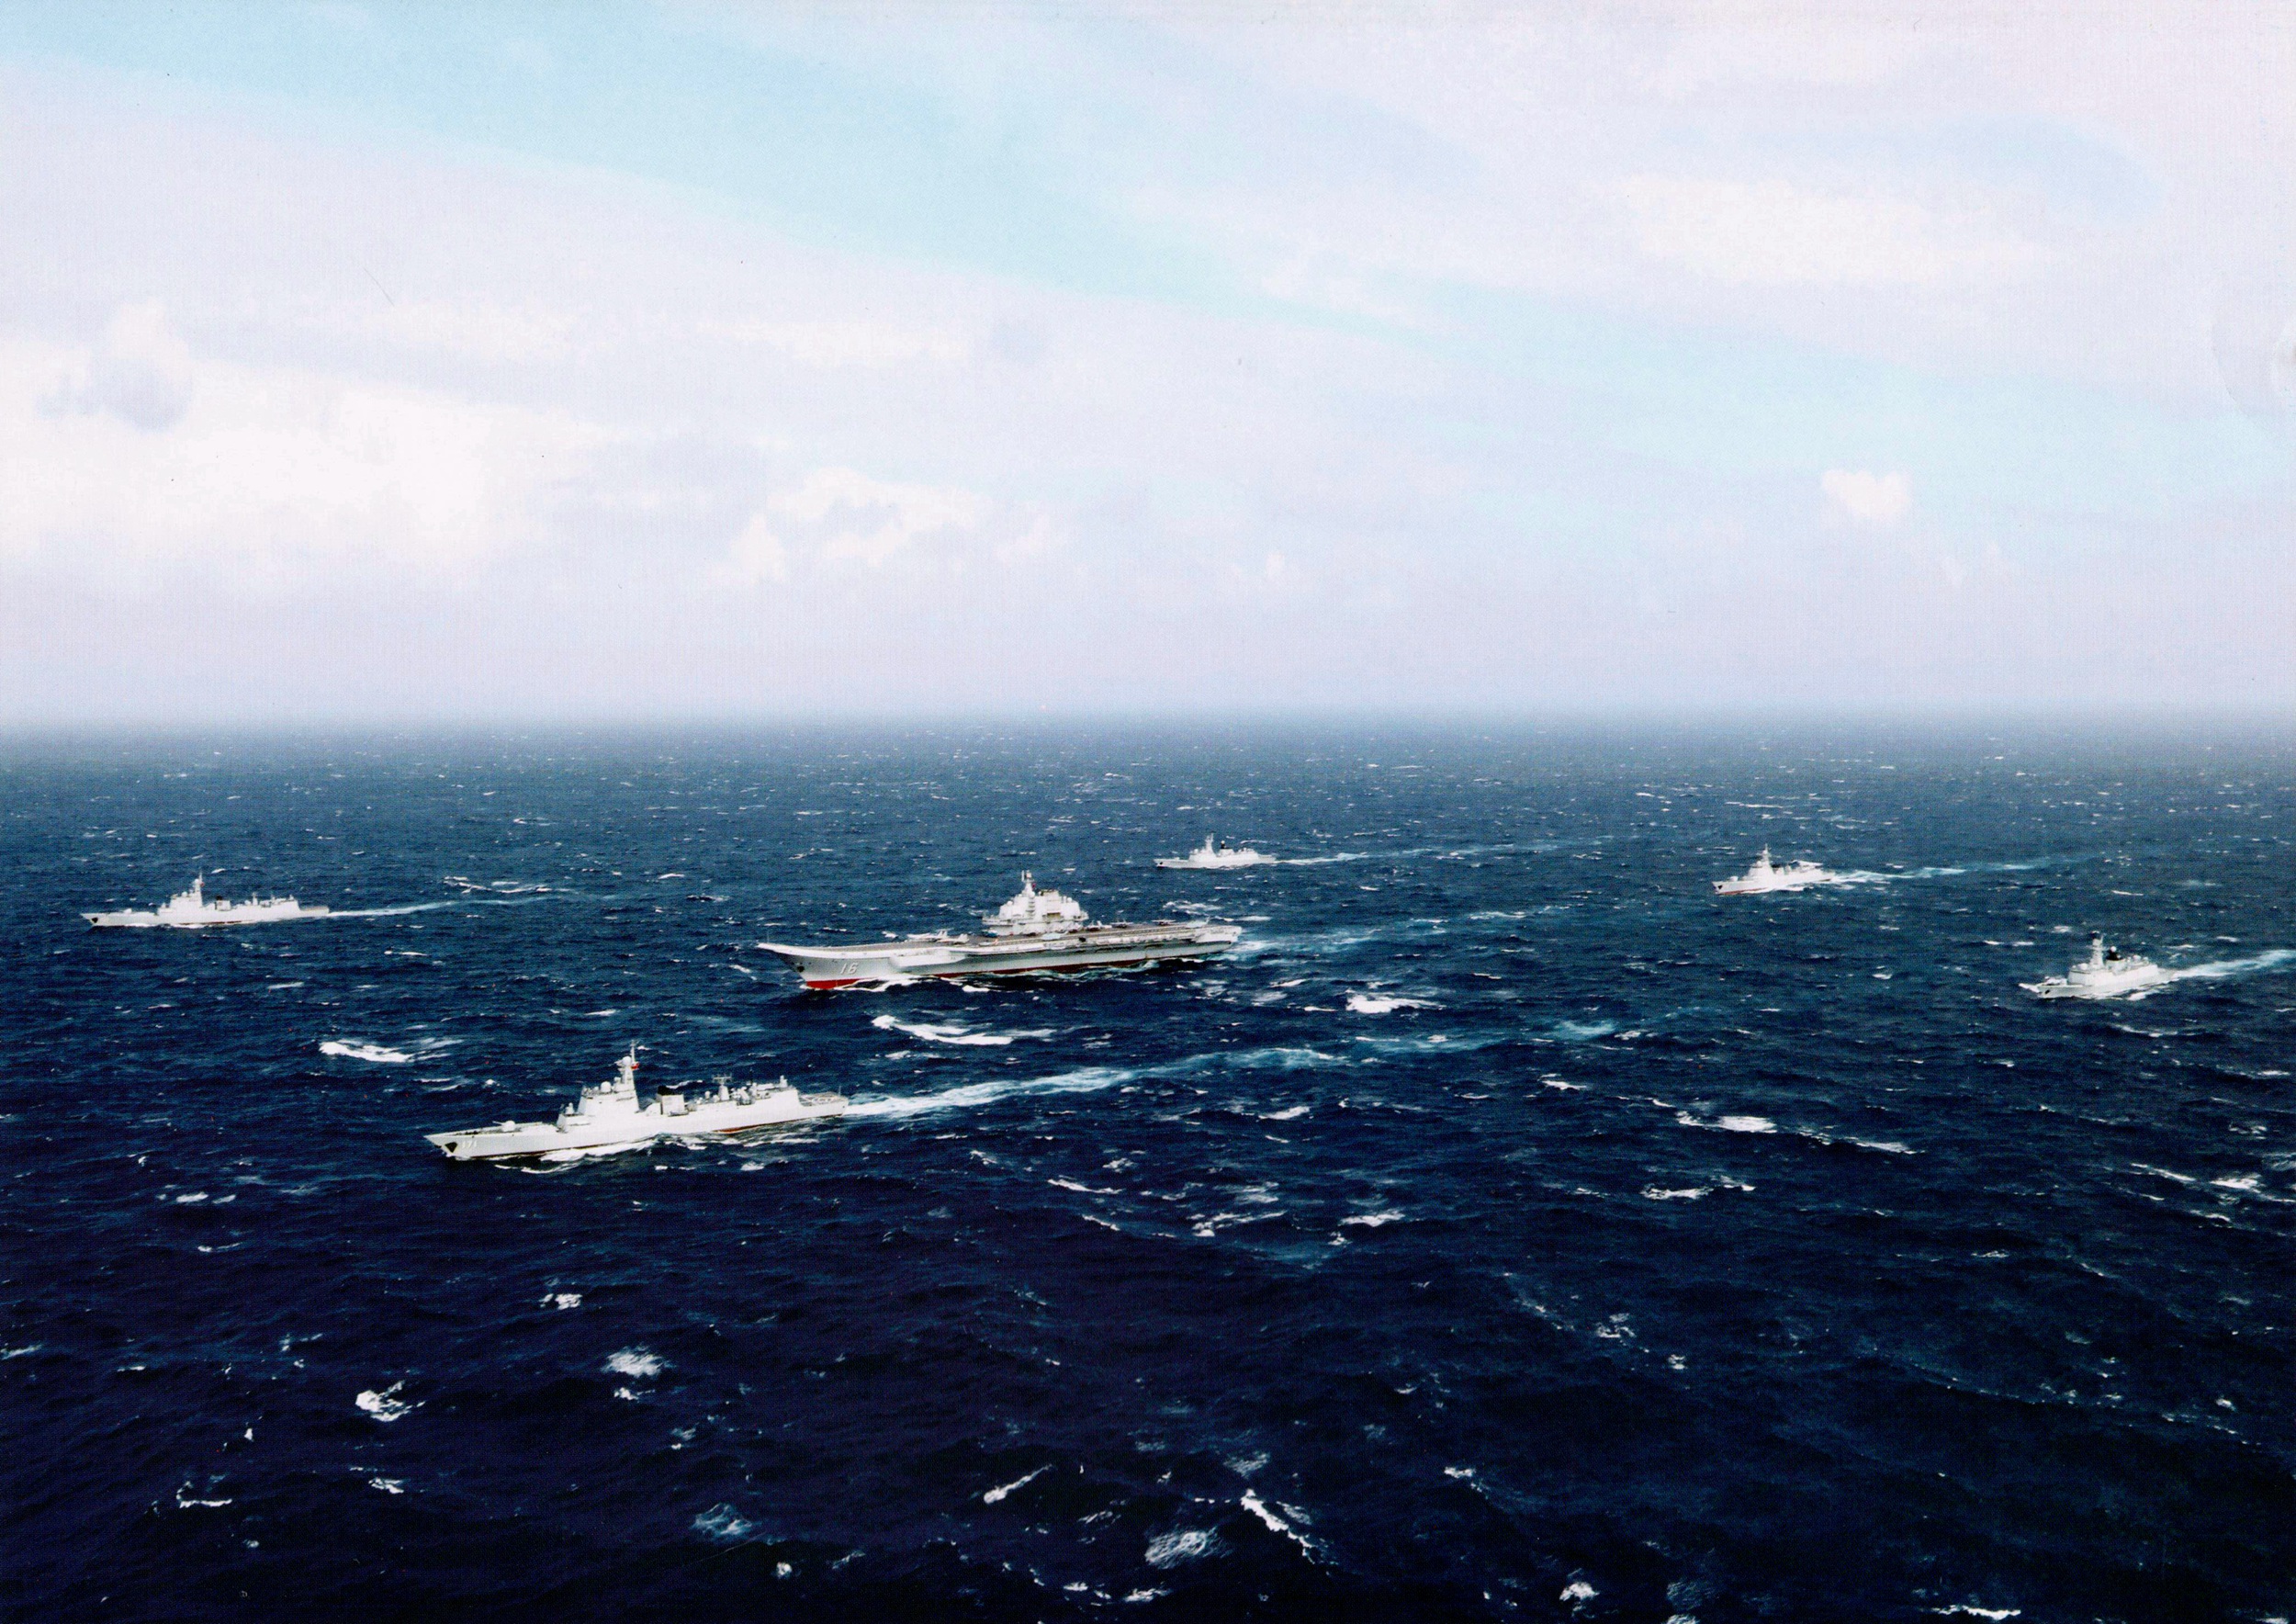 「风声」辽宁舰穿越宫古海峡的重大意义